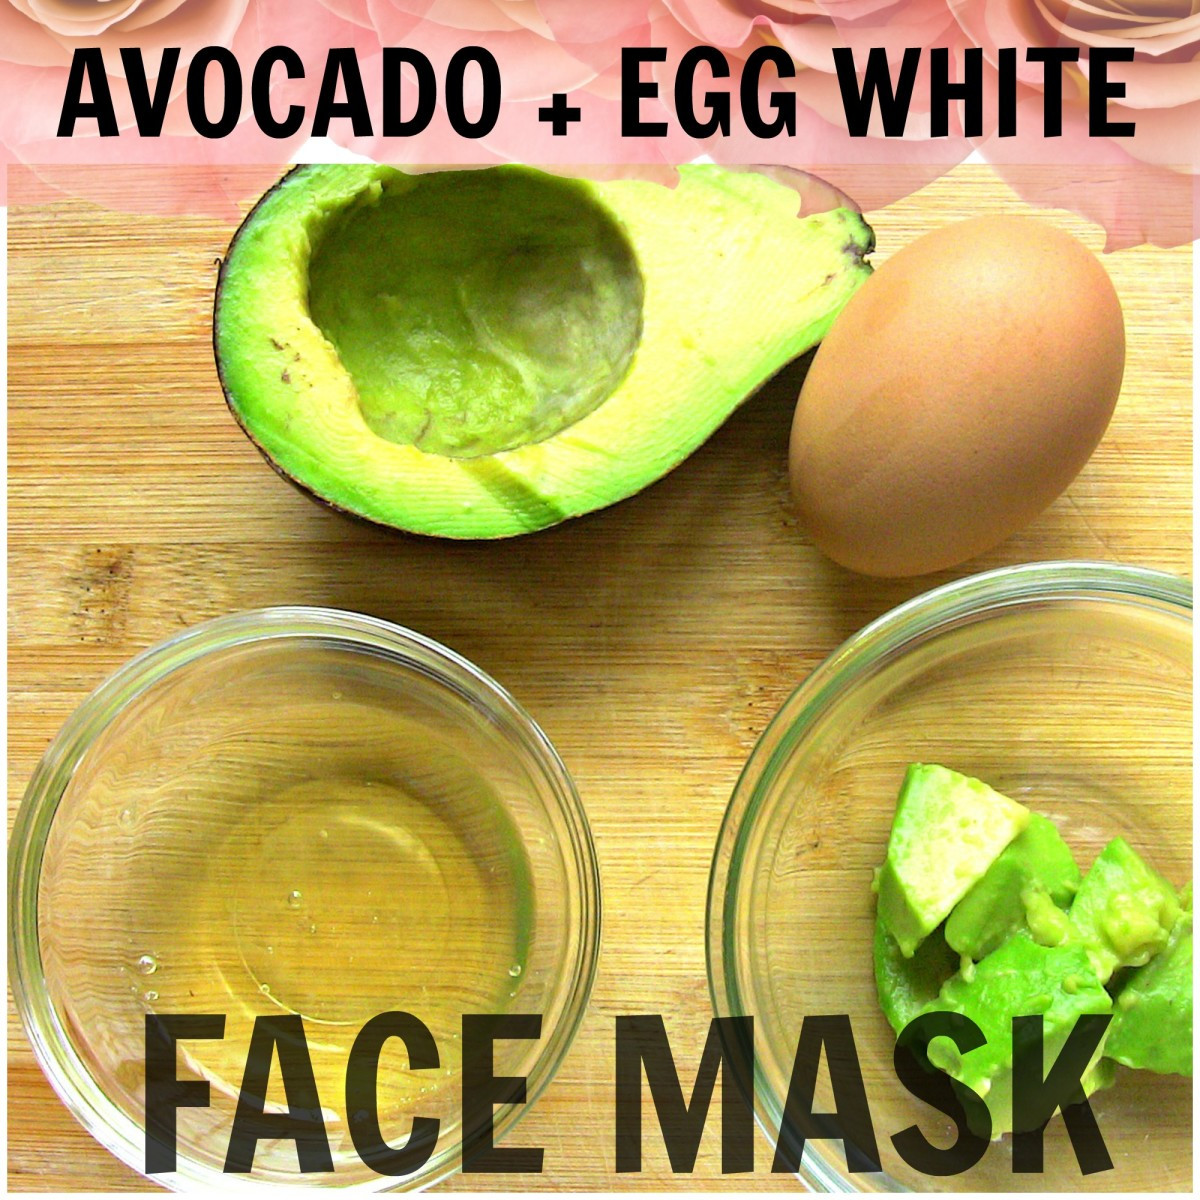 Avocado Mask DIY
 DIY Avocado Egg White Face Mask